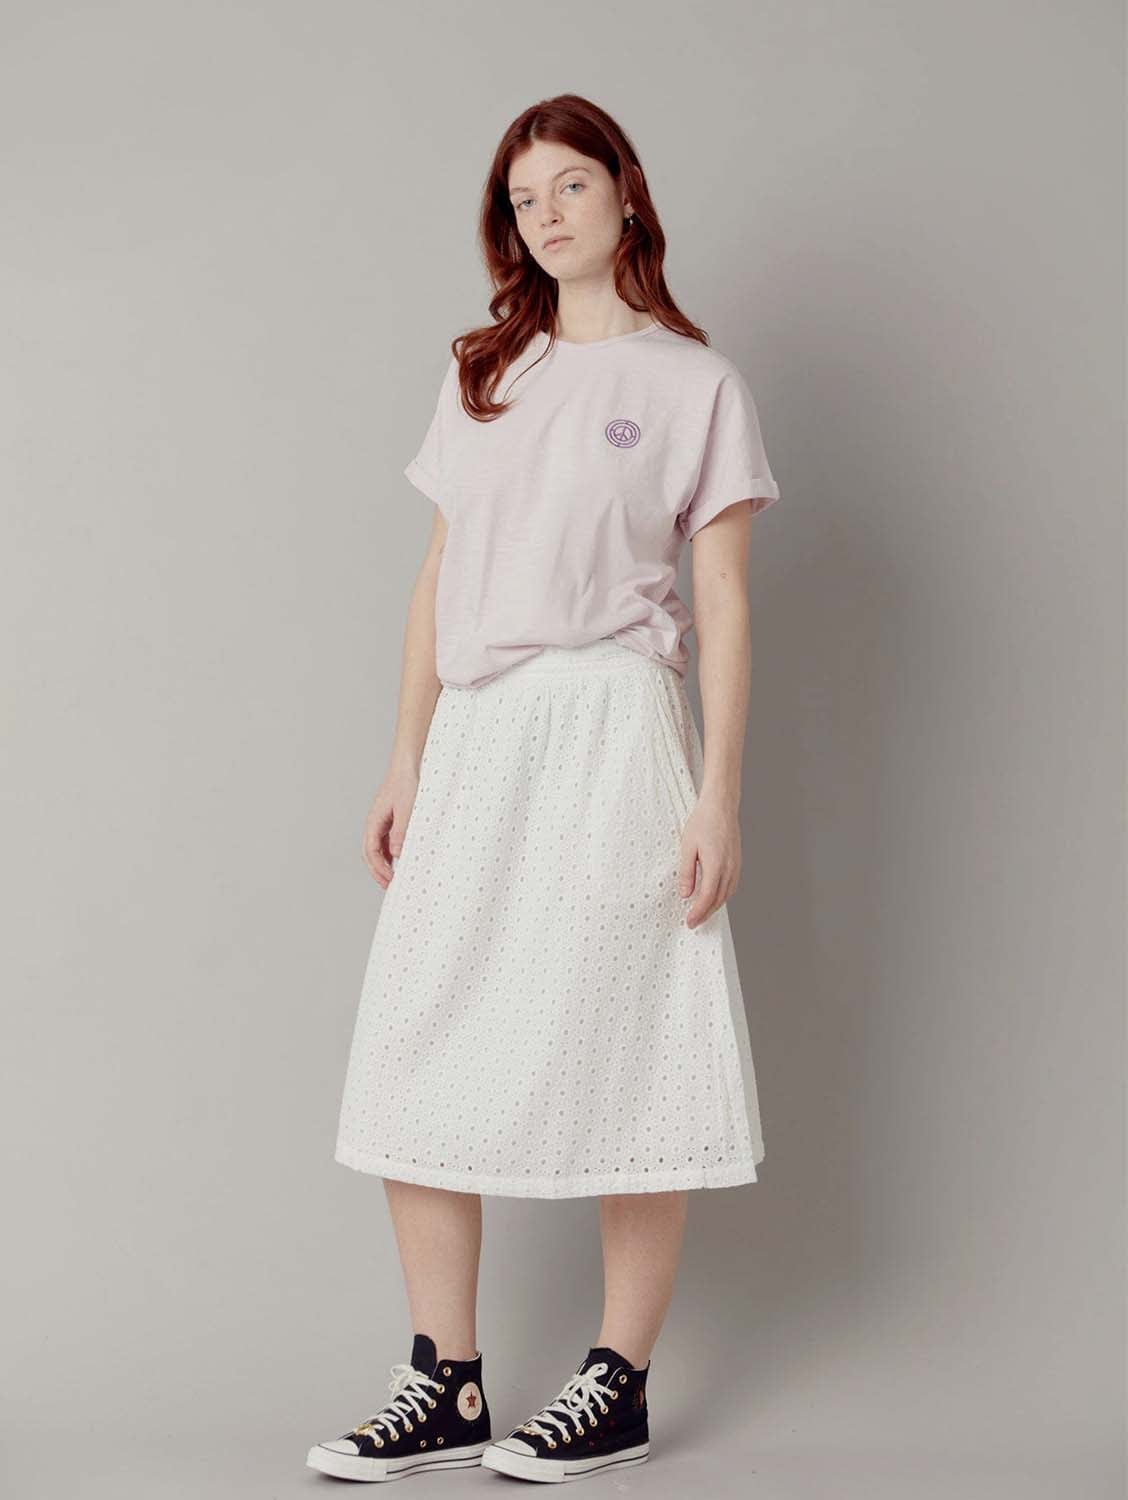 KOMODO NAMI Organic Cotton Midi Skirt - White SIZE 5 / UK 16 / EUR 44